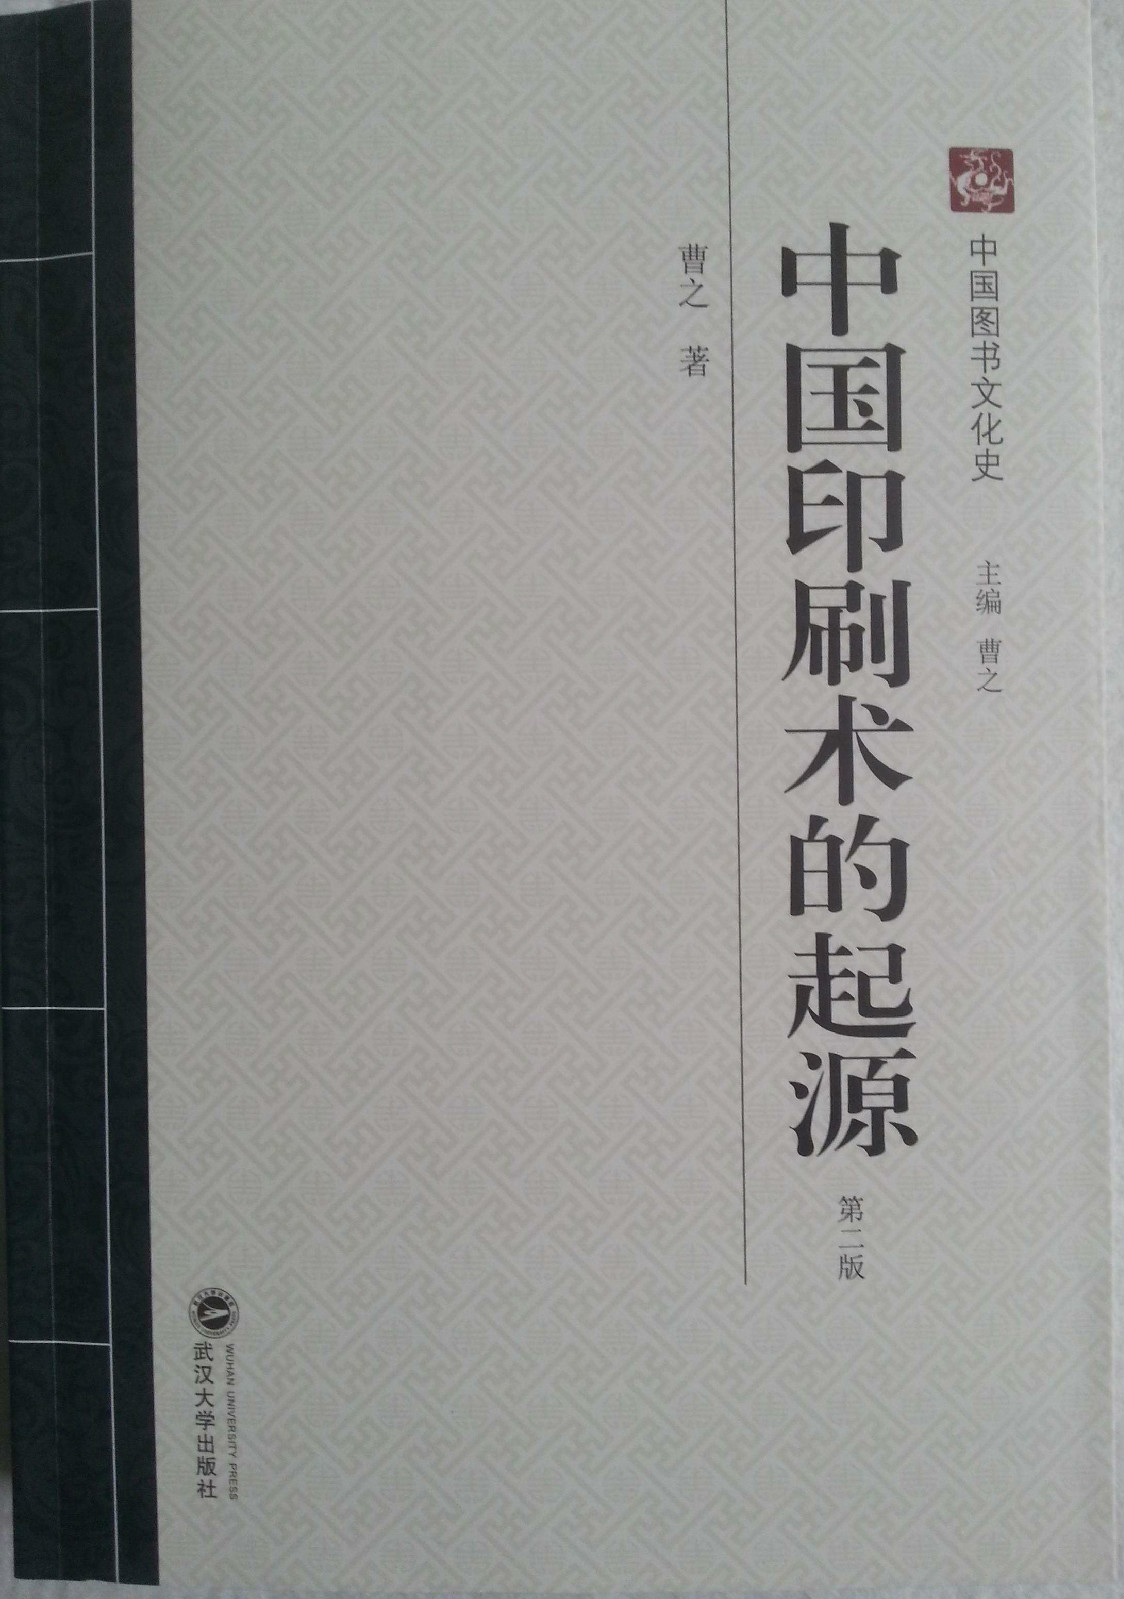 中國印刷術的起源